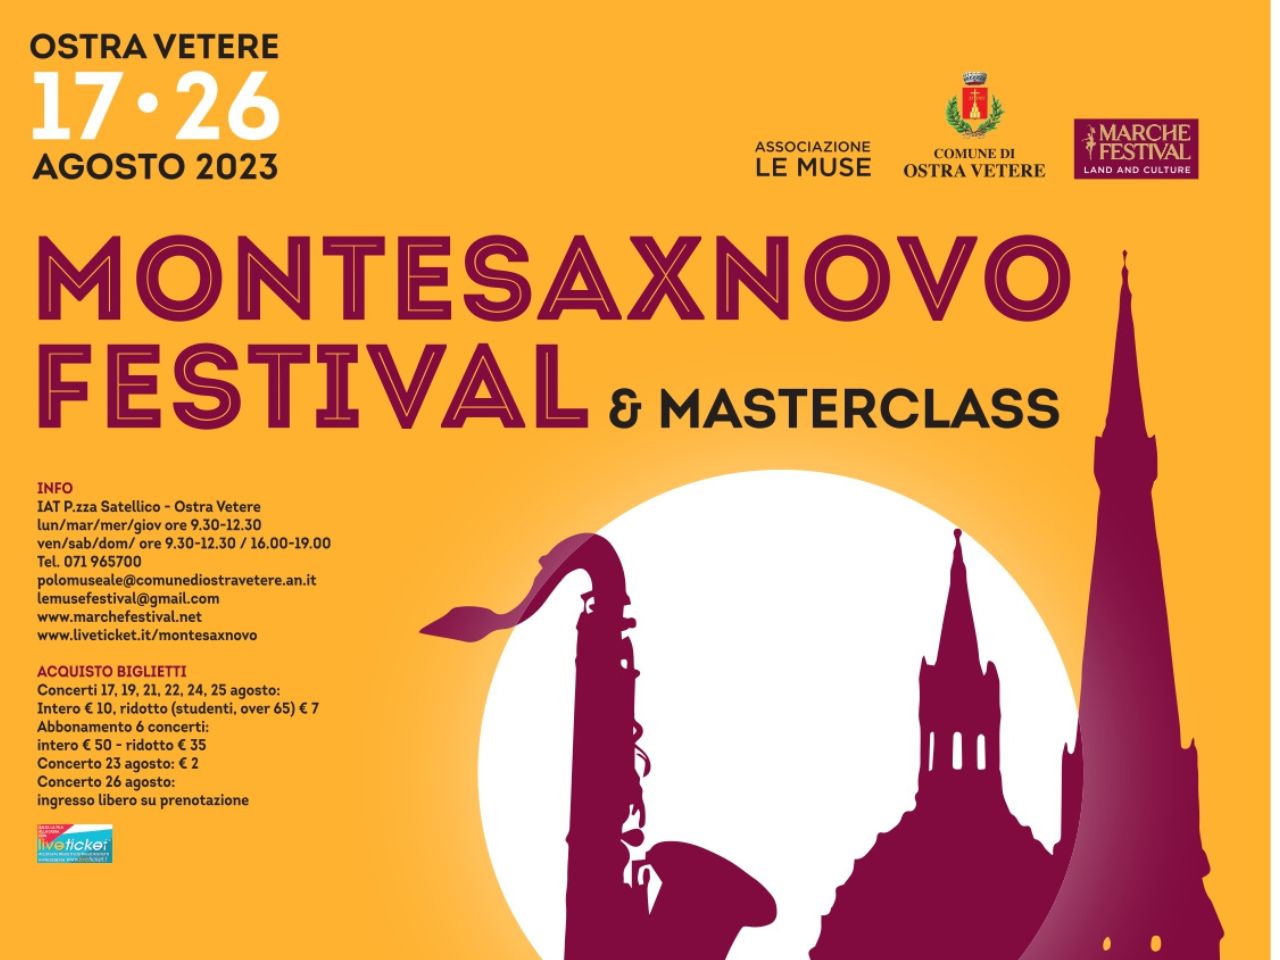 Al via la V Edizione di Montesaxnovo Festival & Masterclass a Ostra Vetere